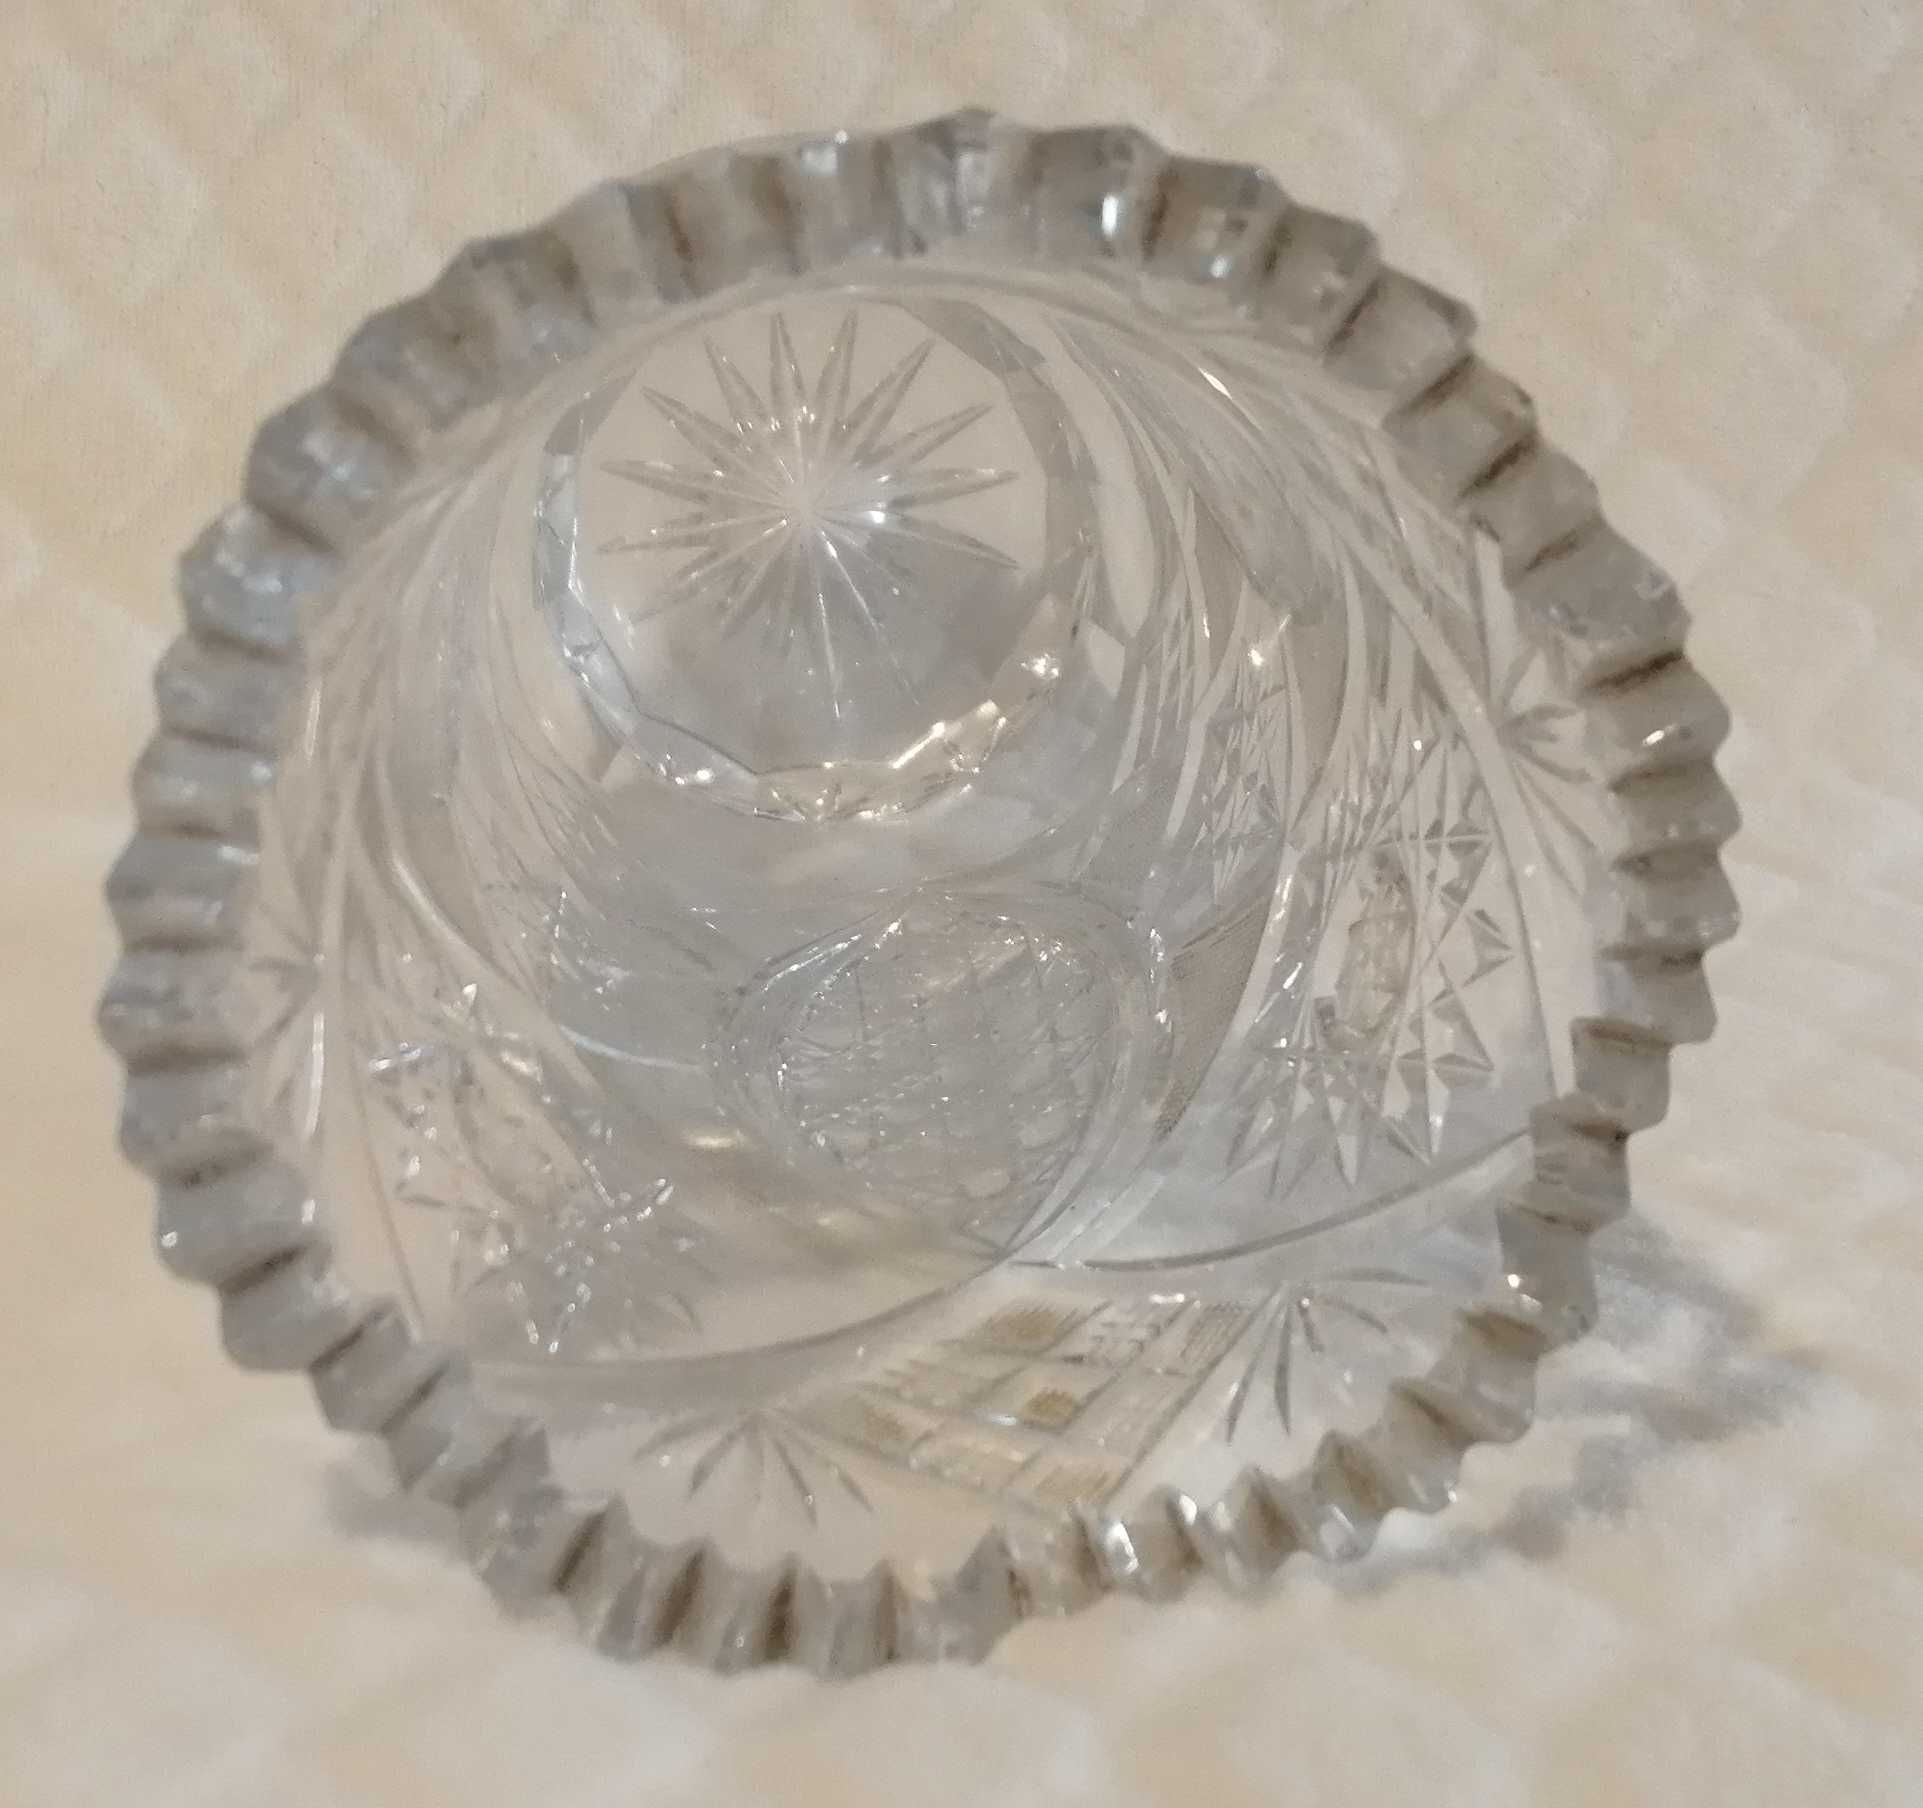 Kryształowy wazon, 20cm, 0,825L (Szkło)